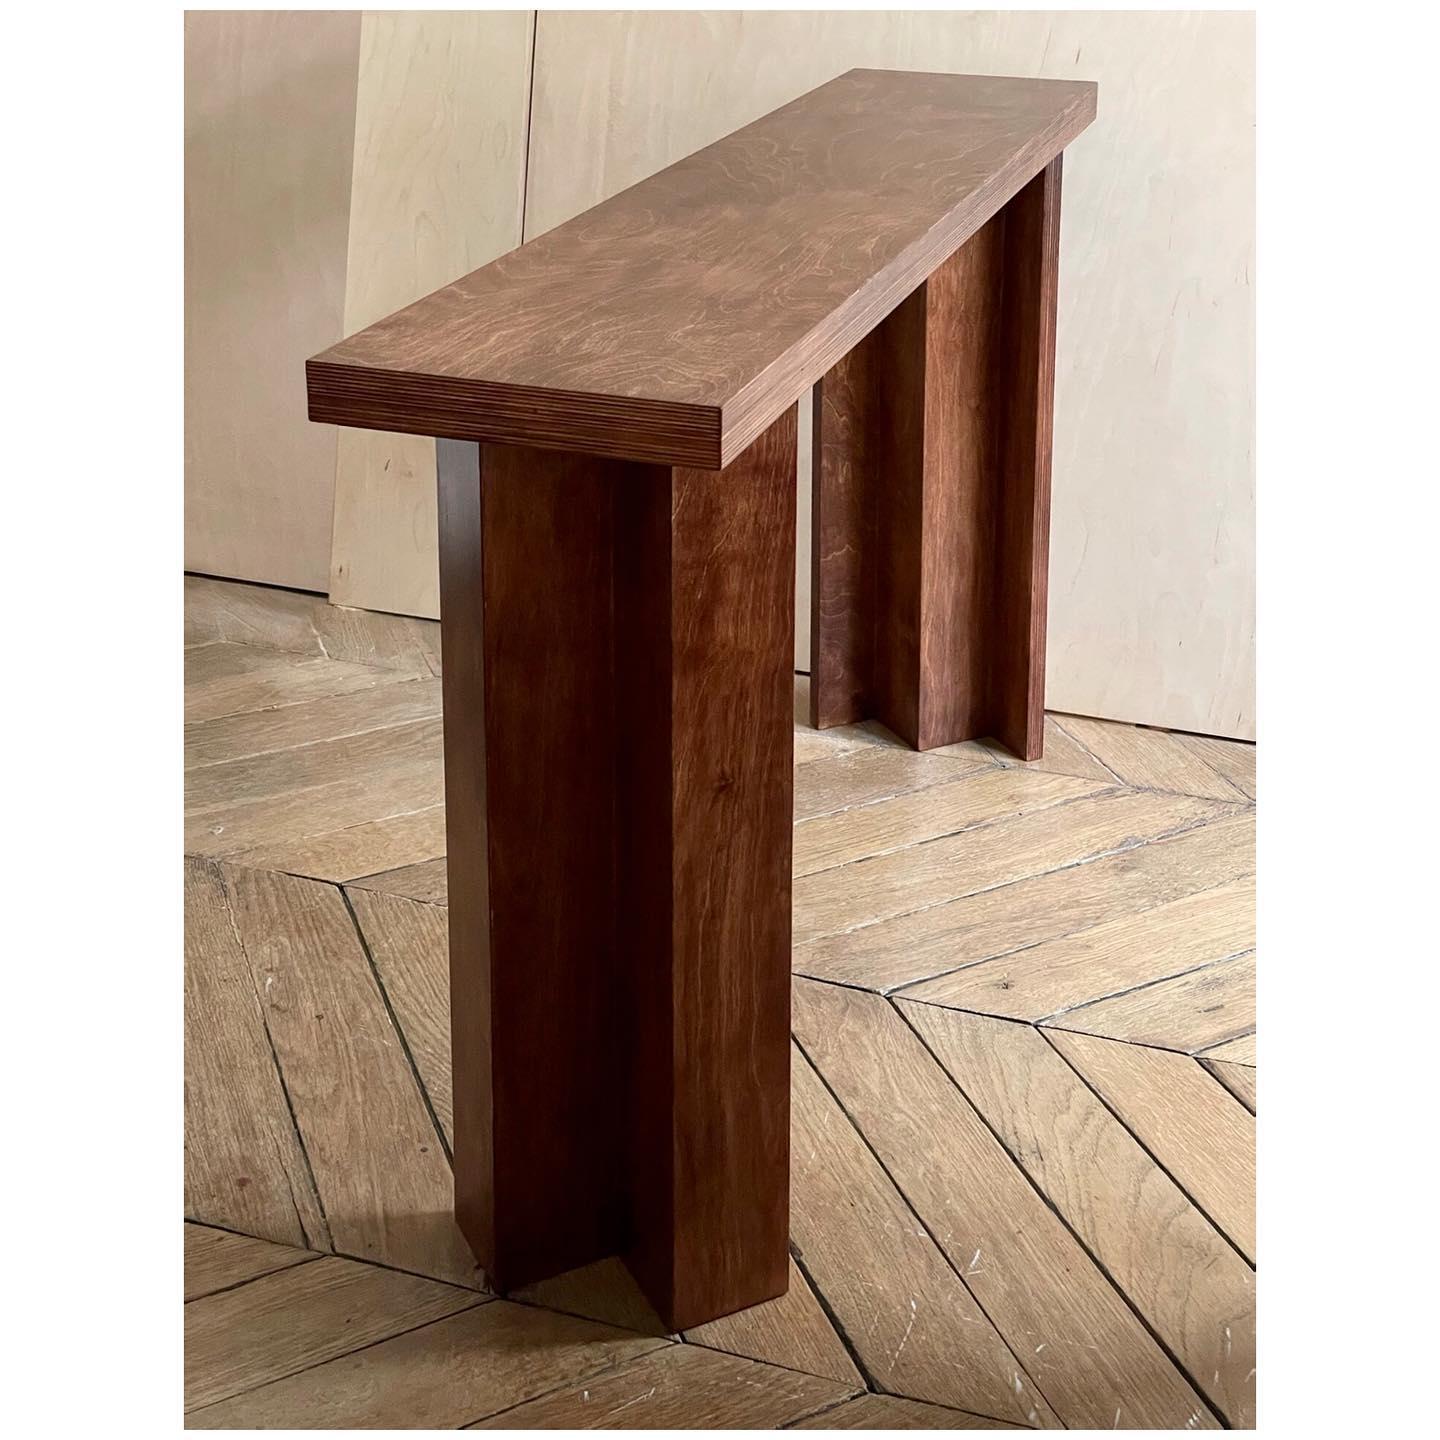 Einzigartiger Konsolentisch von Goons 
Abmessungen: B 120 x T 27 x H 74 cm
MATERIALIEN: Holz
Die Abmessungen können um +/- 10 cm angepasst werden.

Goons hat seinen Sitz in Paris, Frankreich. Alle ihre Entwürfe sind aus Holz gefertigt.